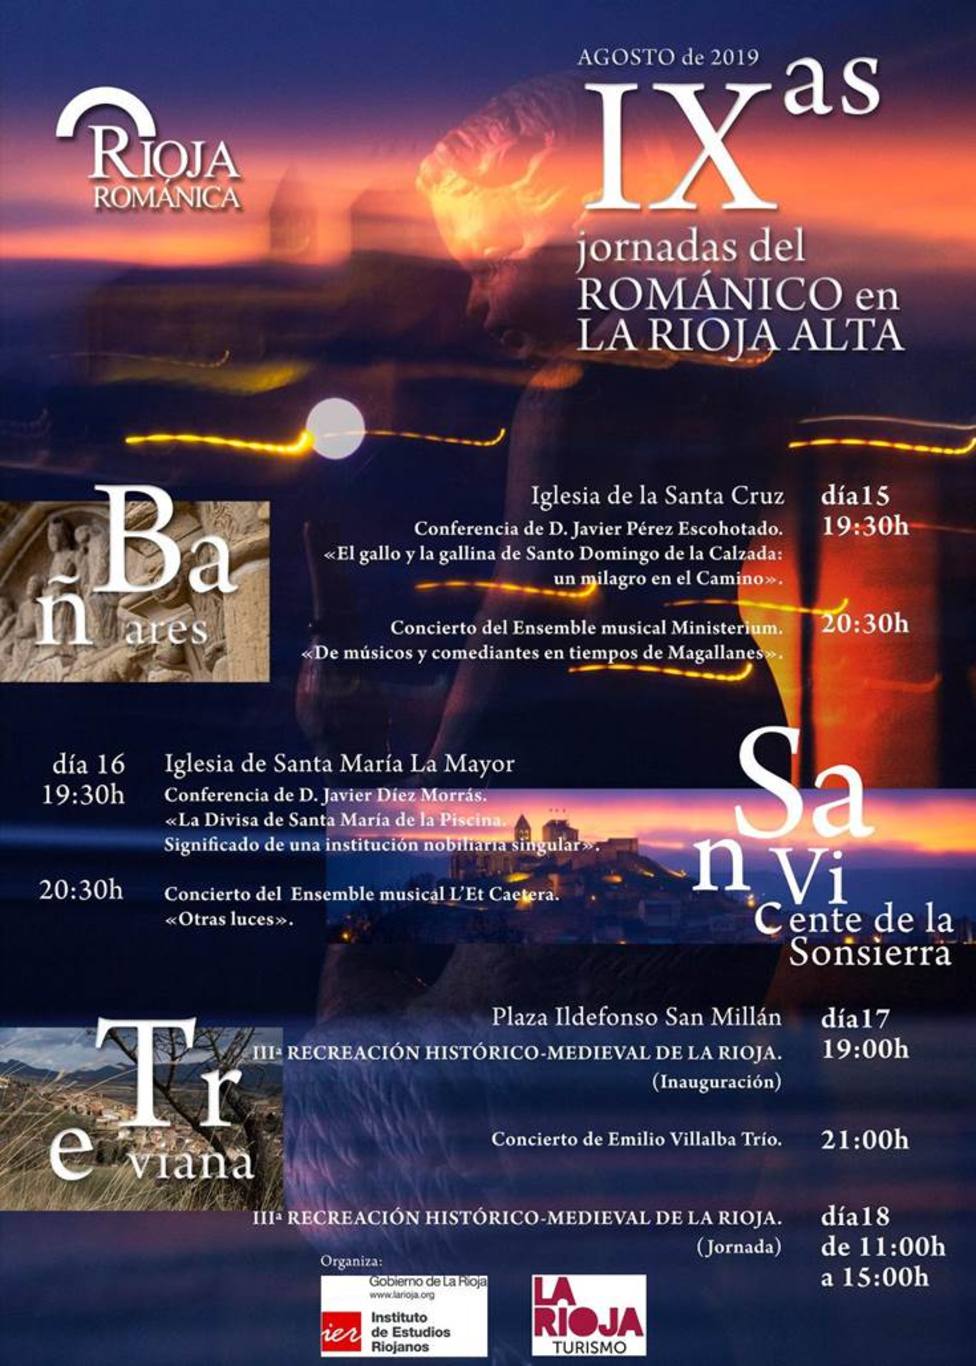 Las IX Jornadas del Románico en La Rioja Alta llegarán a Bañares, San Vicente de la Sonsierra y Treviana 